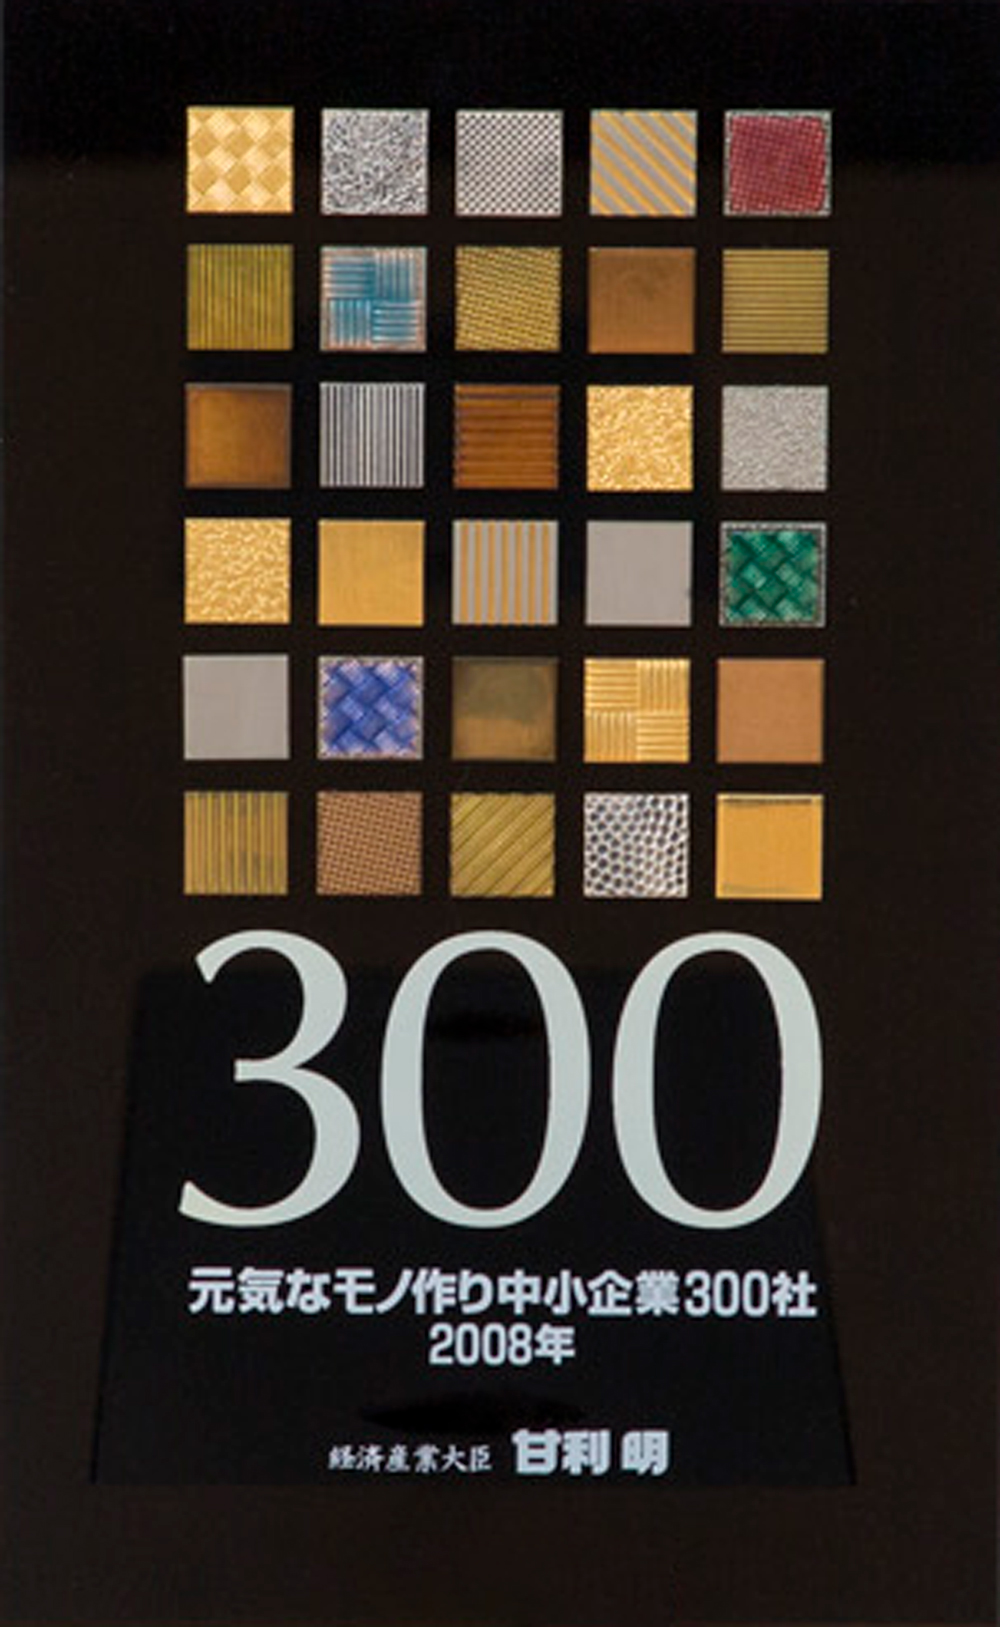 元気なモノづくり中小企業300社 2008年 経済産業大臣 甘利明と記載された黒い認定証